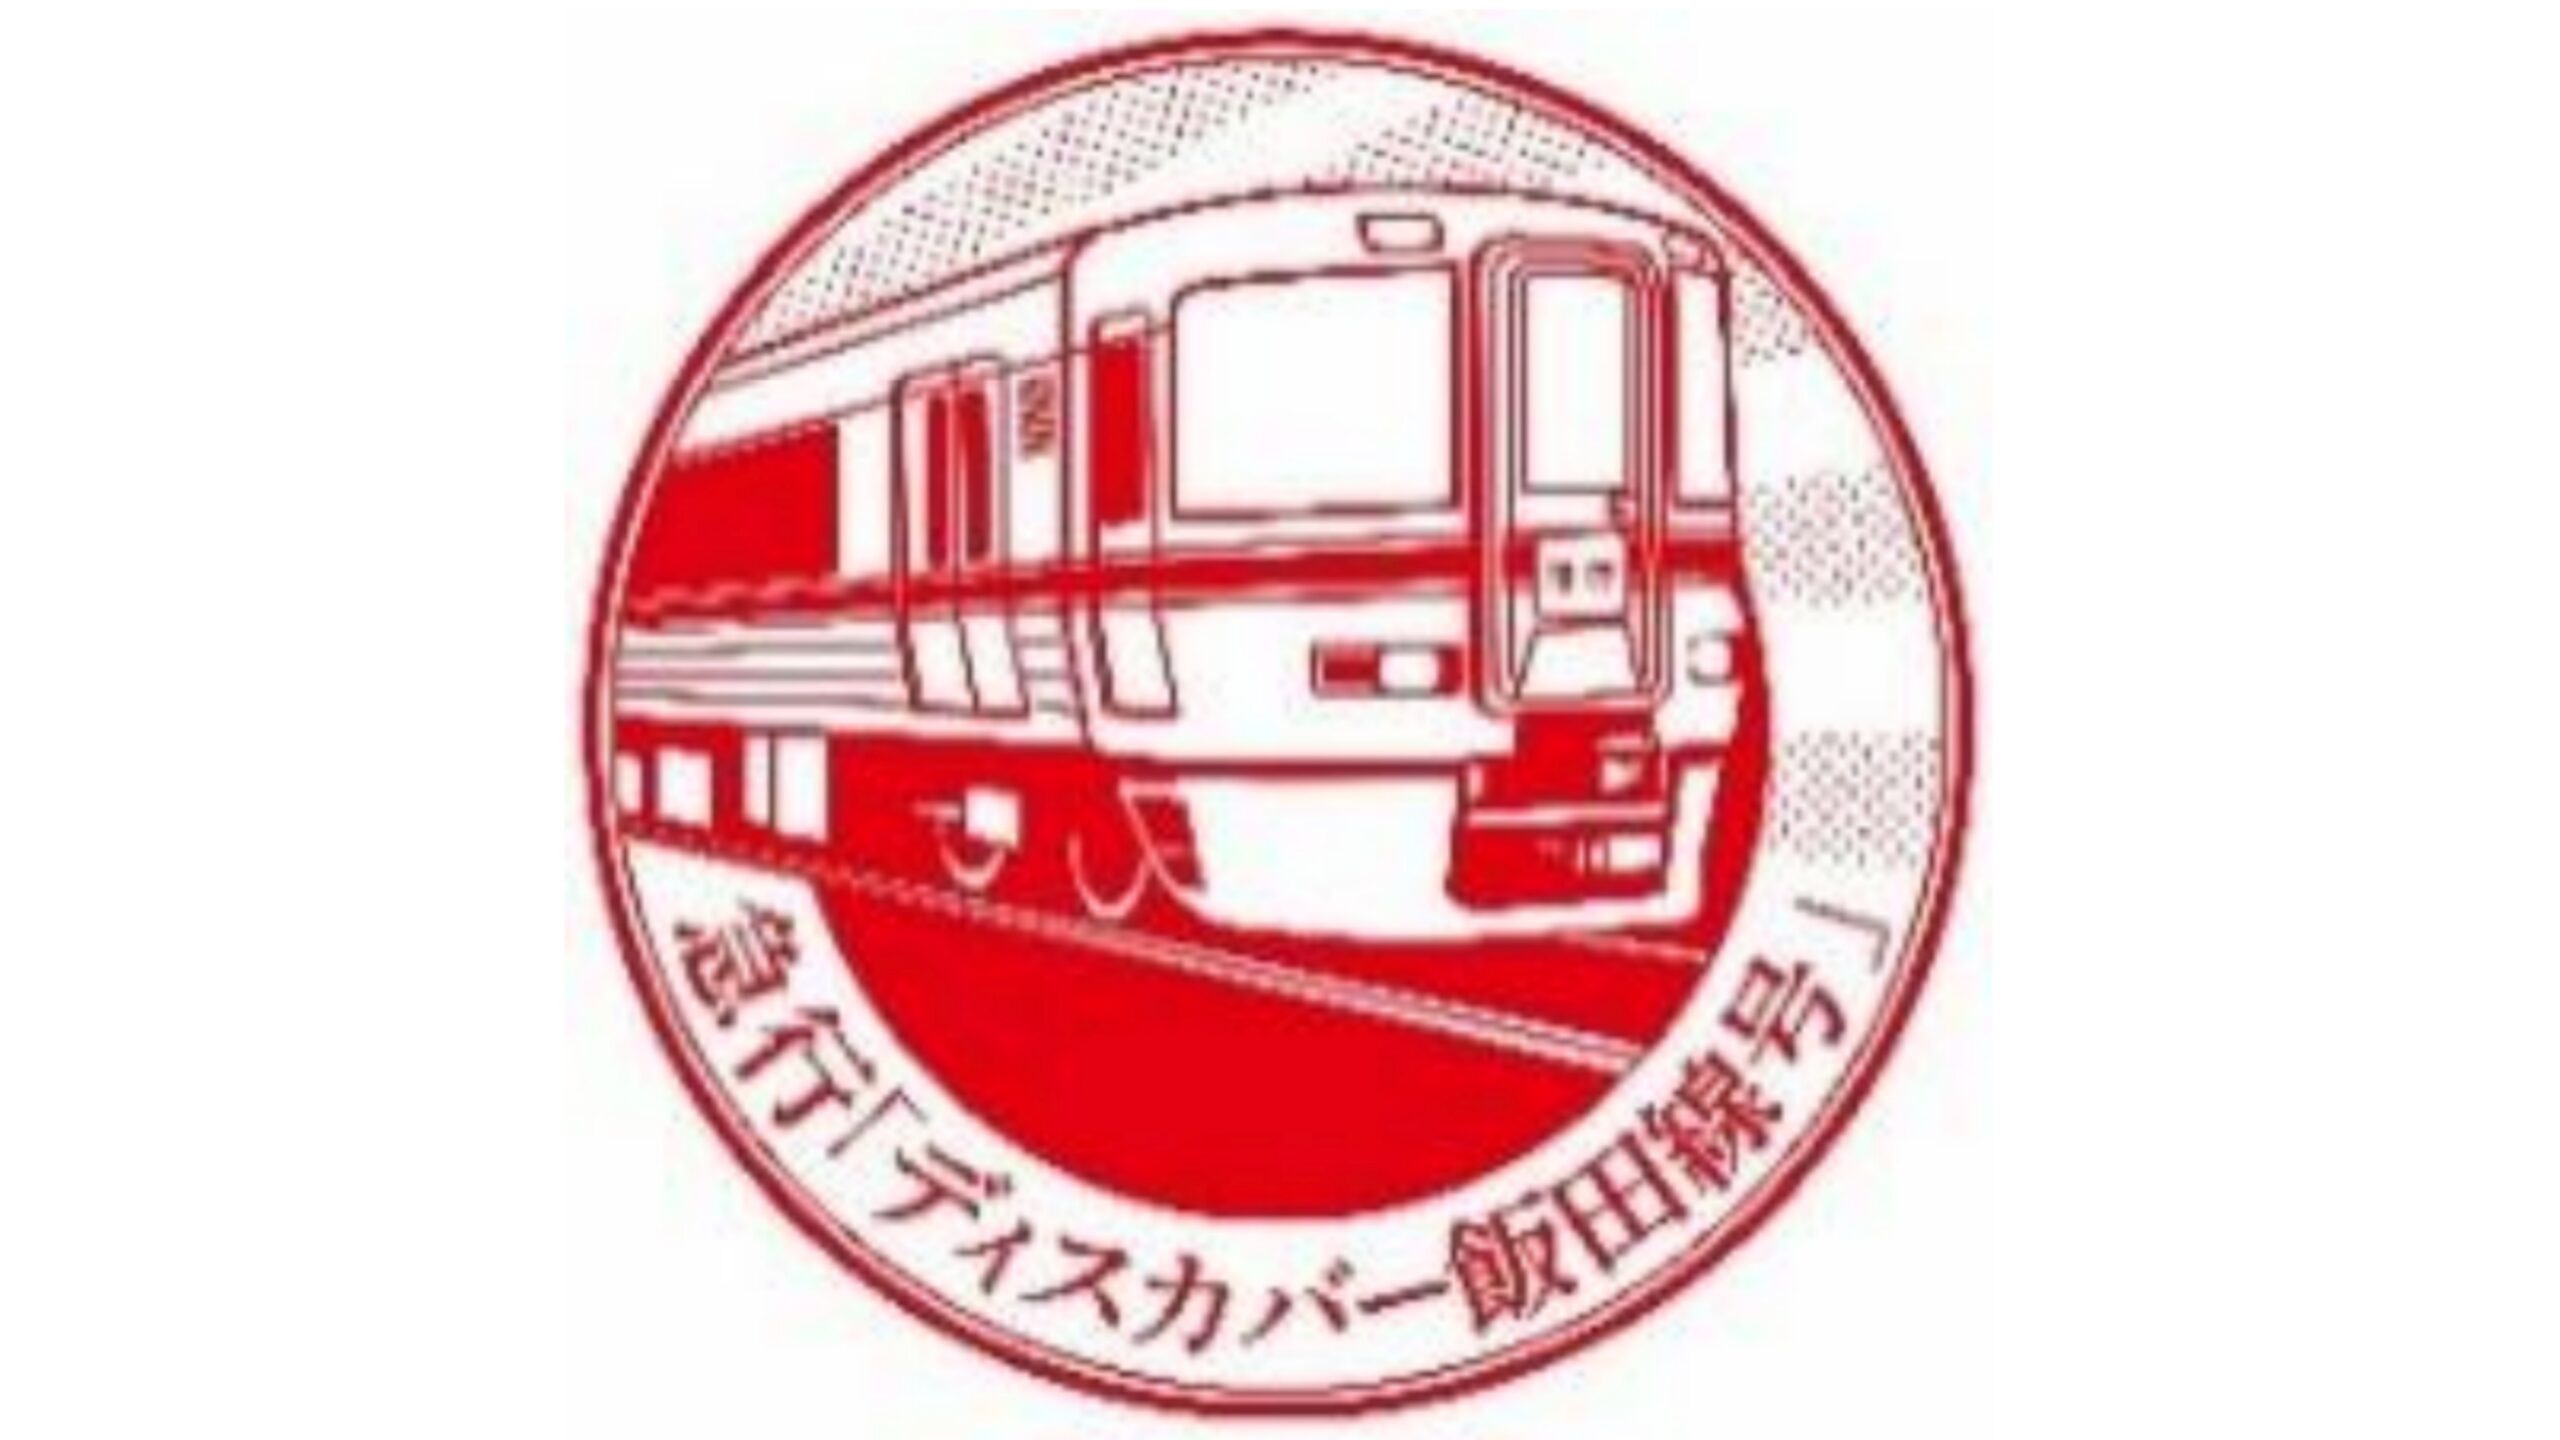 【JR東海新規急行】ディスカバー飯田線号運転 飯田線秘境駅号に追加